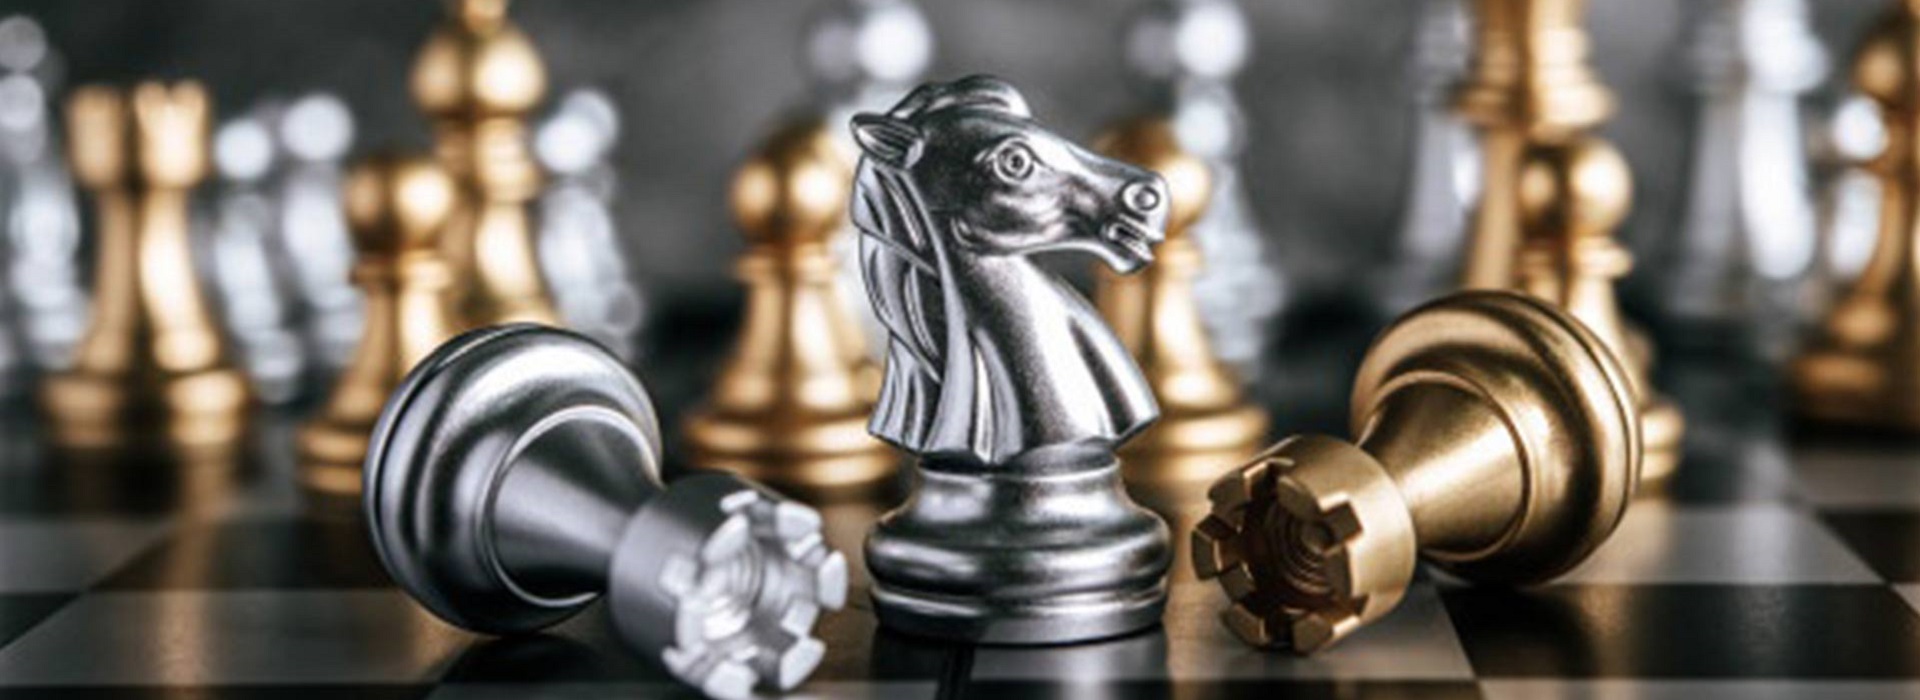 Tehnički i energetski gasovi |  Chess lessons Dubai & New York